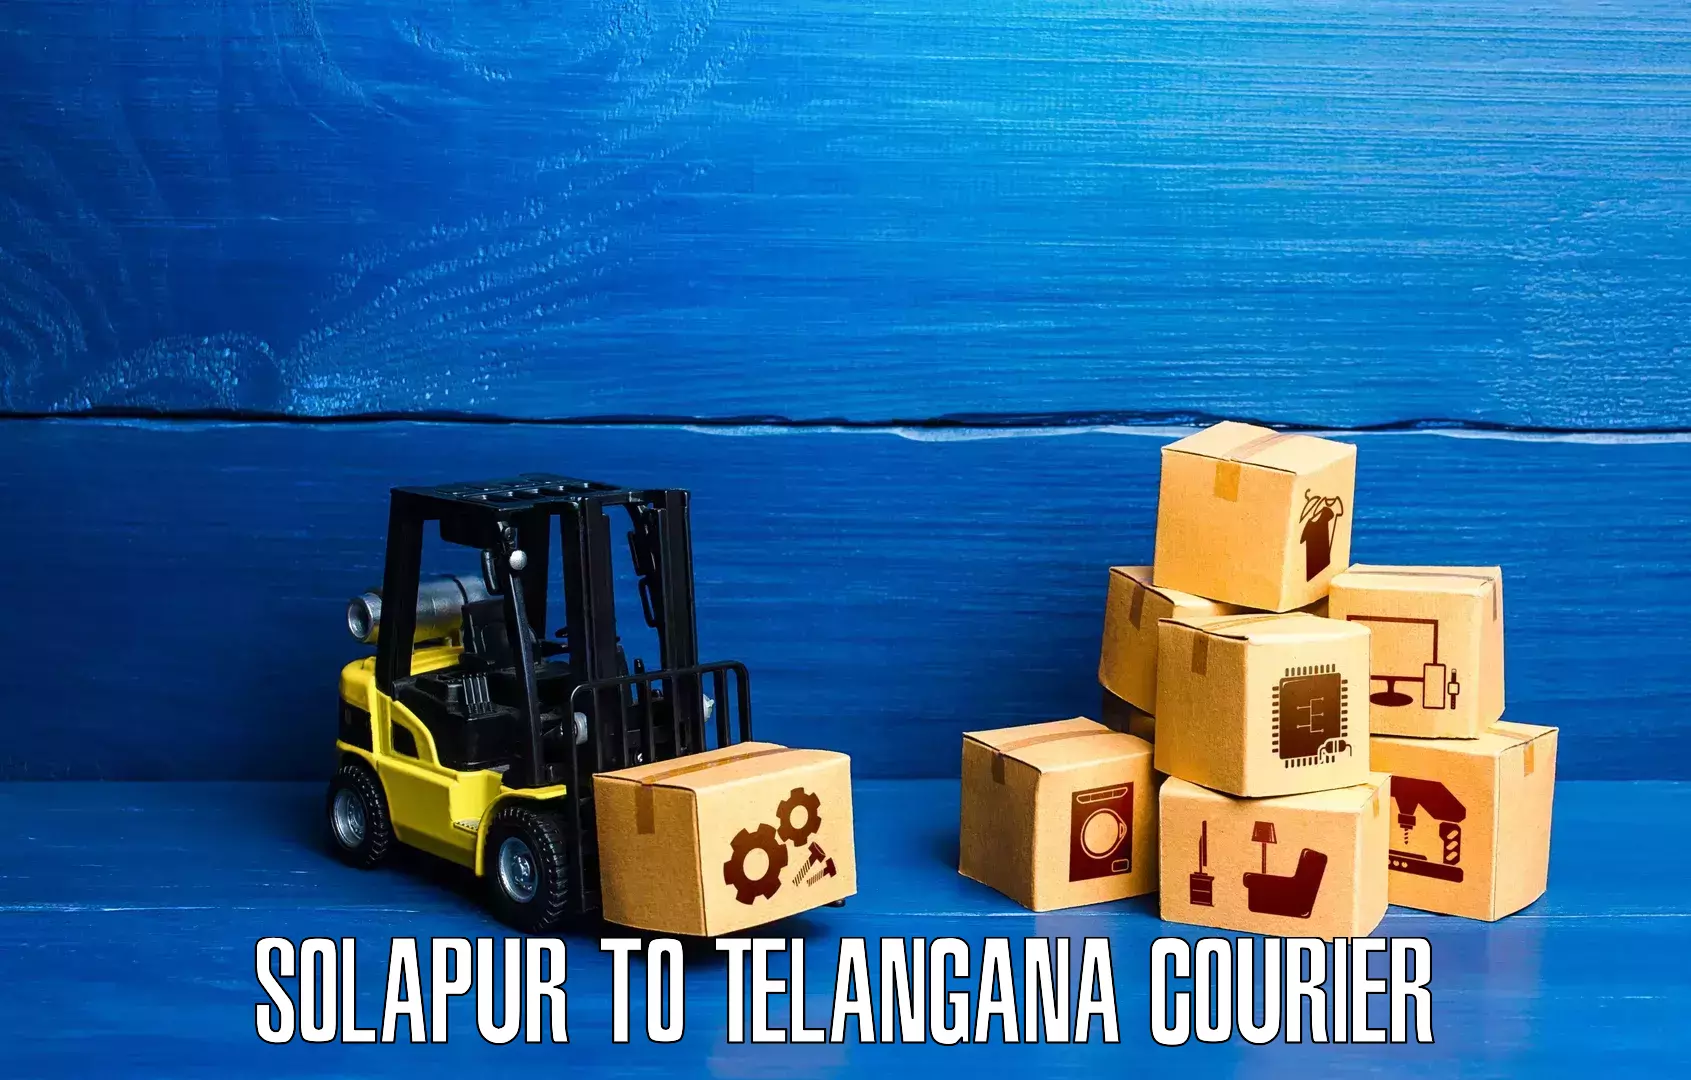 Enhanced tracking features Solapur to Tiryani